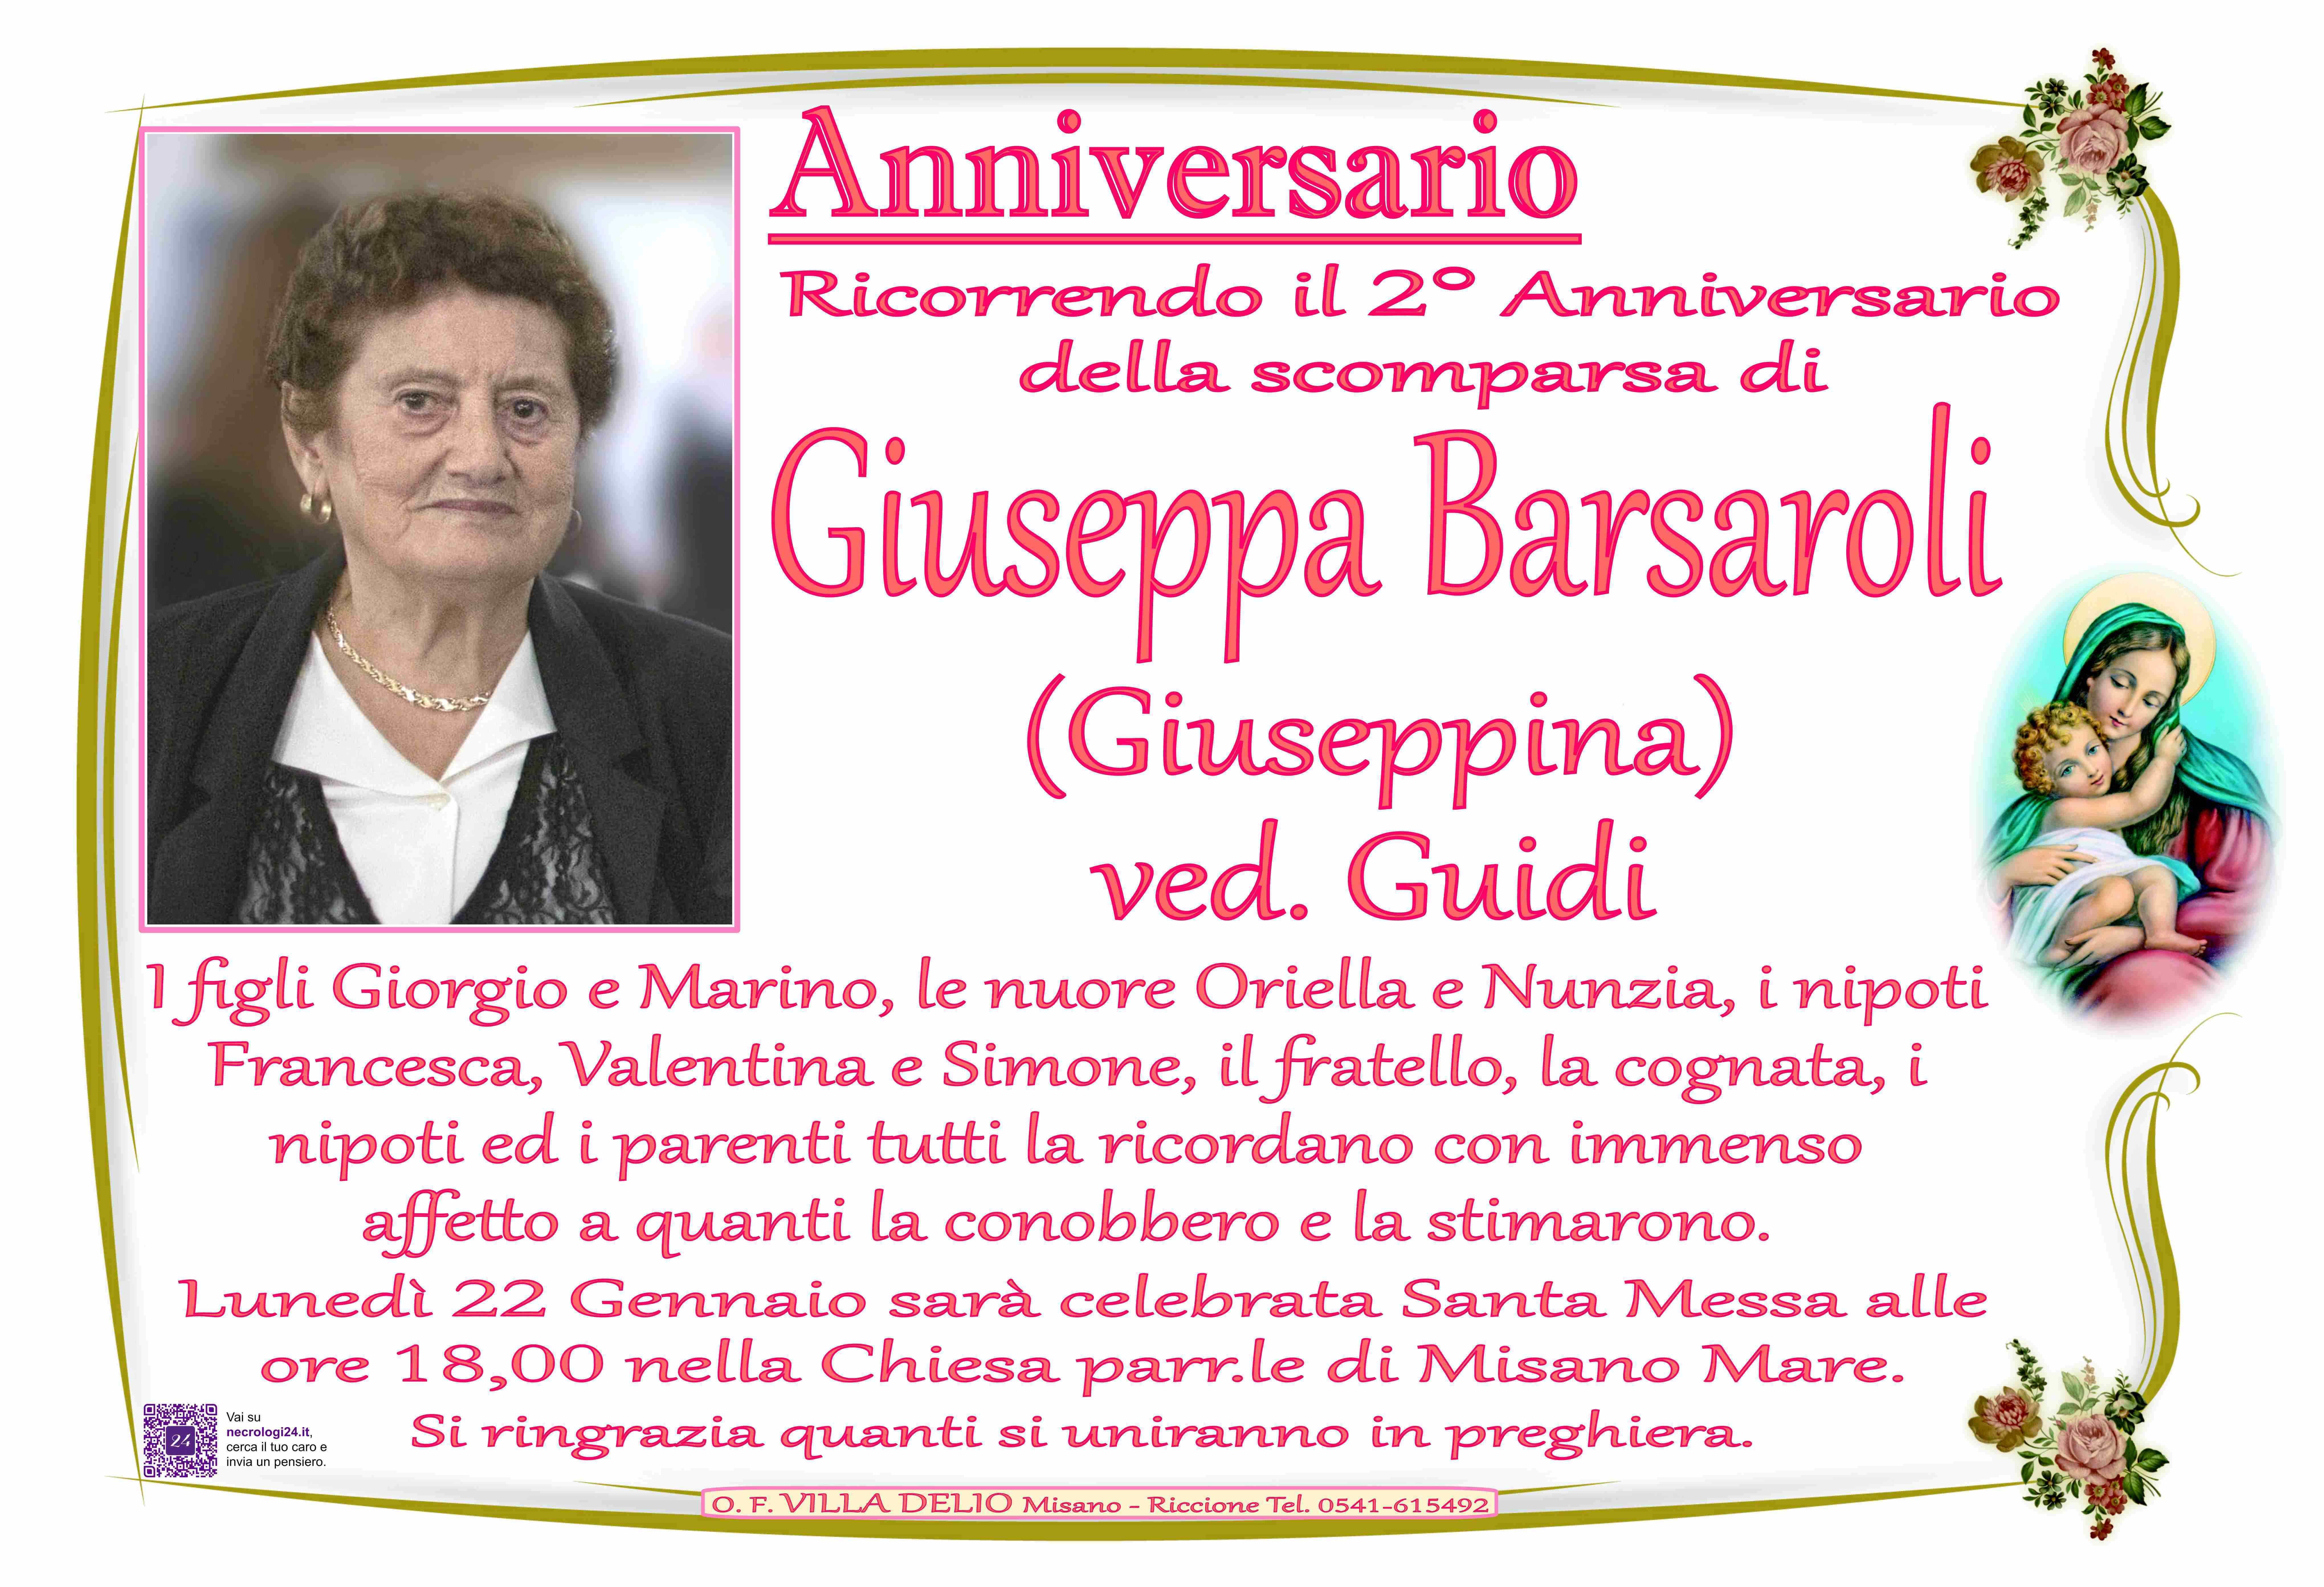 Giuseppa Barsaroli ved. Guidi